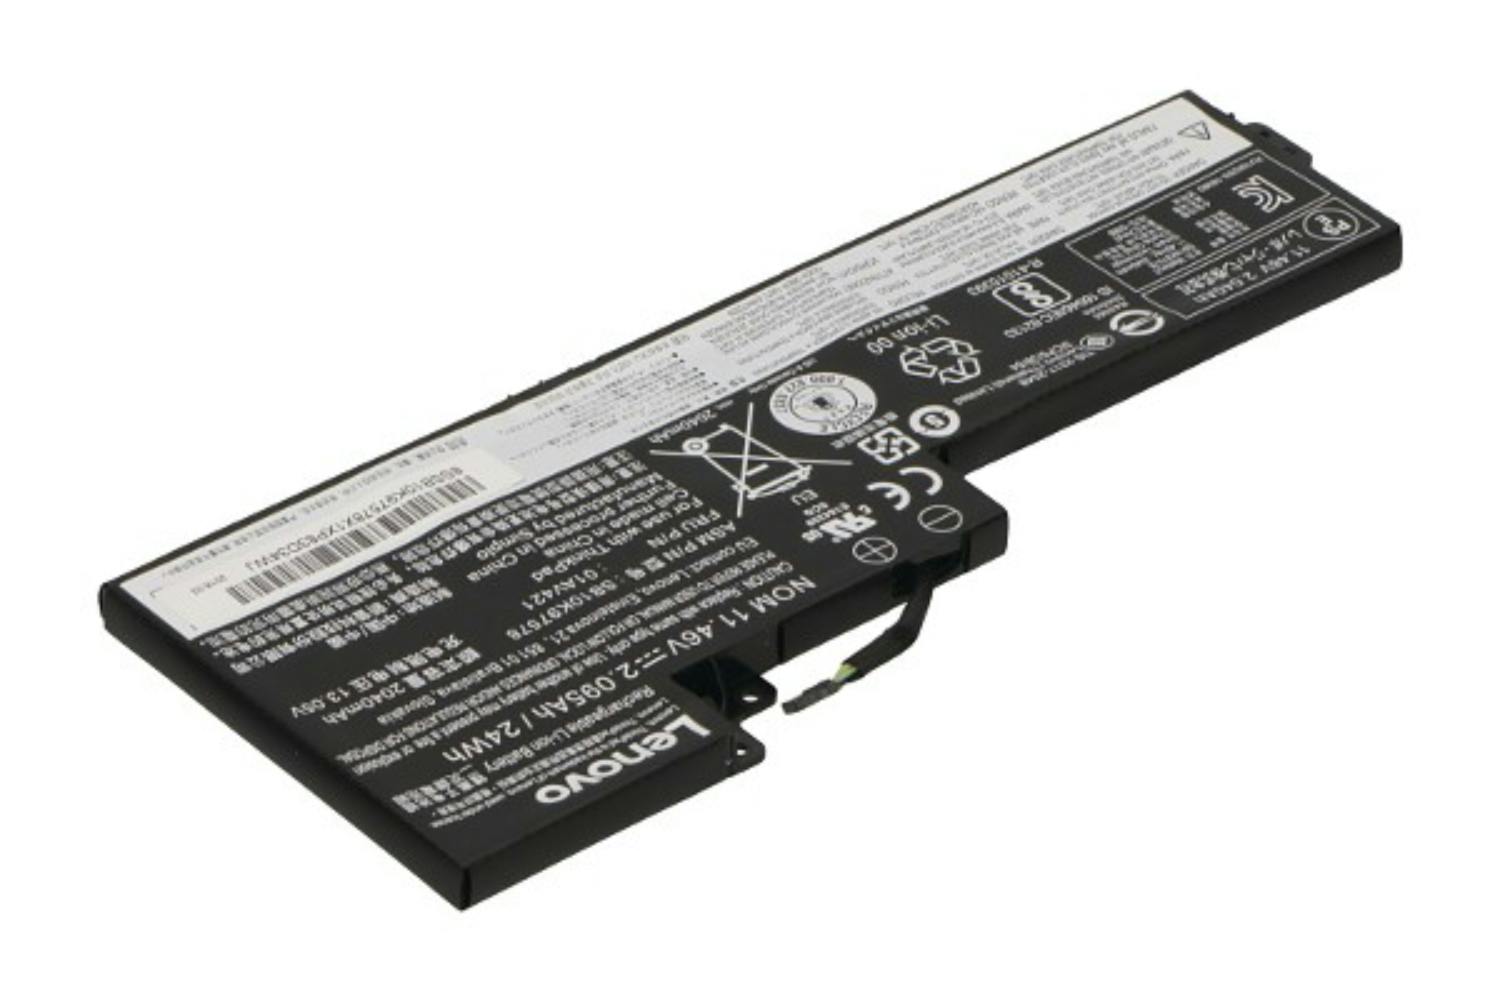 Lenovo 01AV421 2095mAh Main Battery Pack